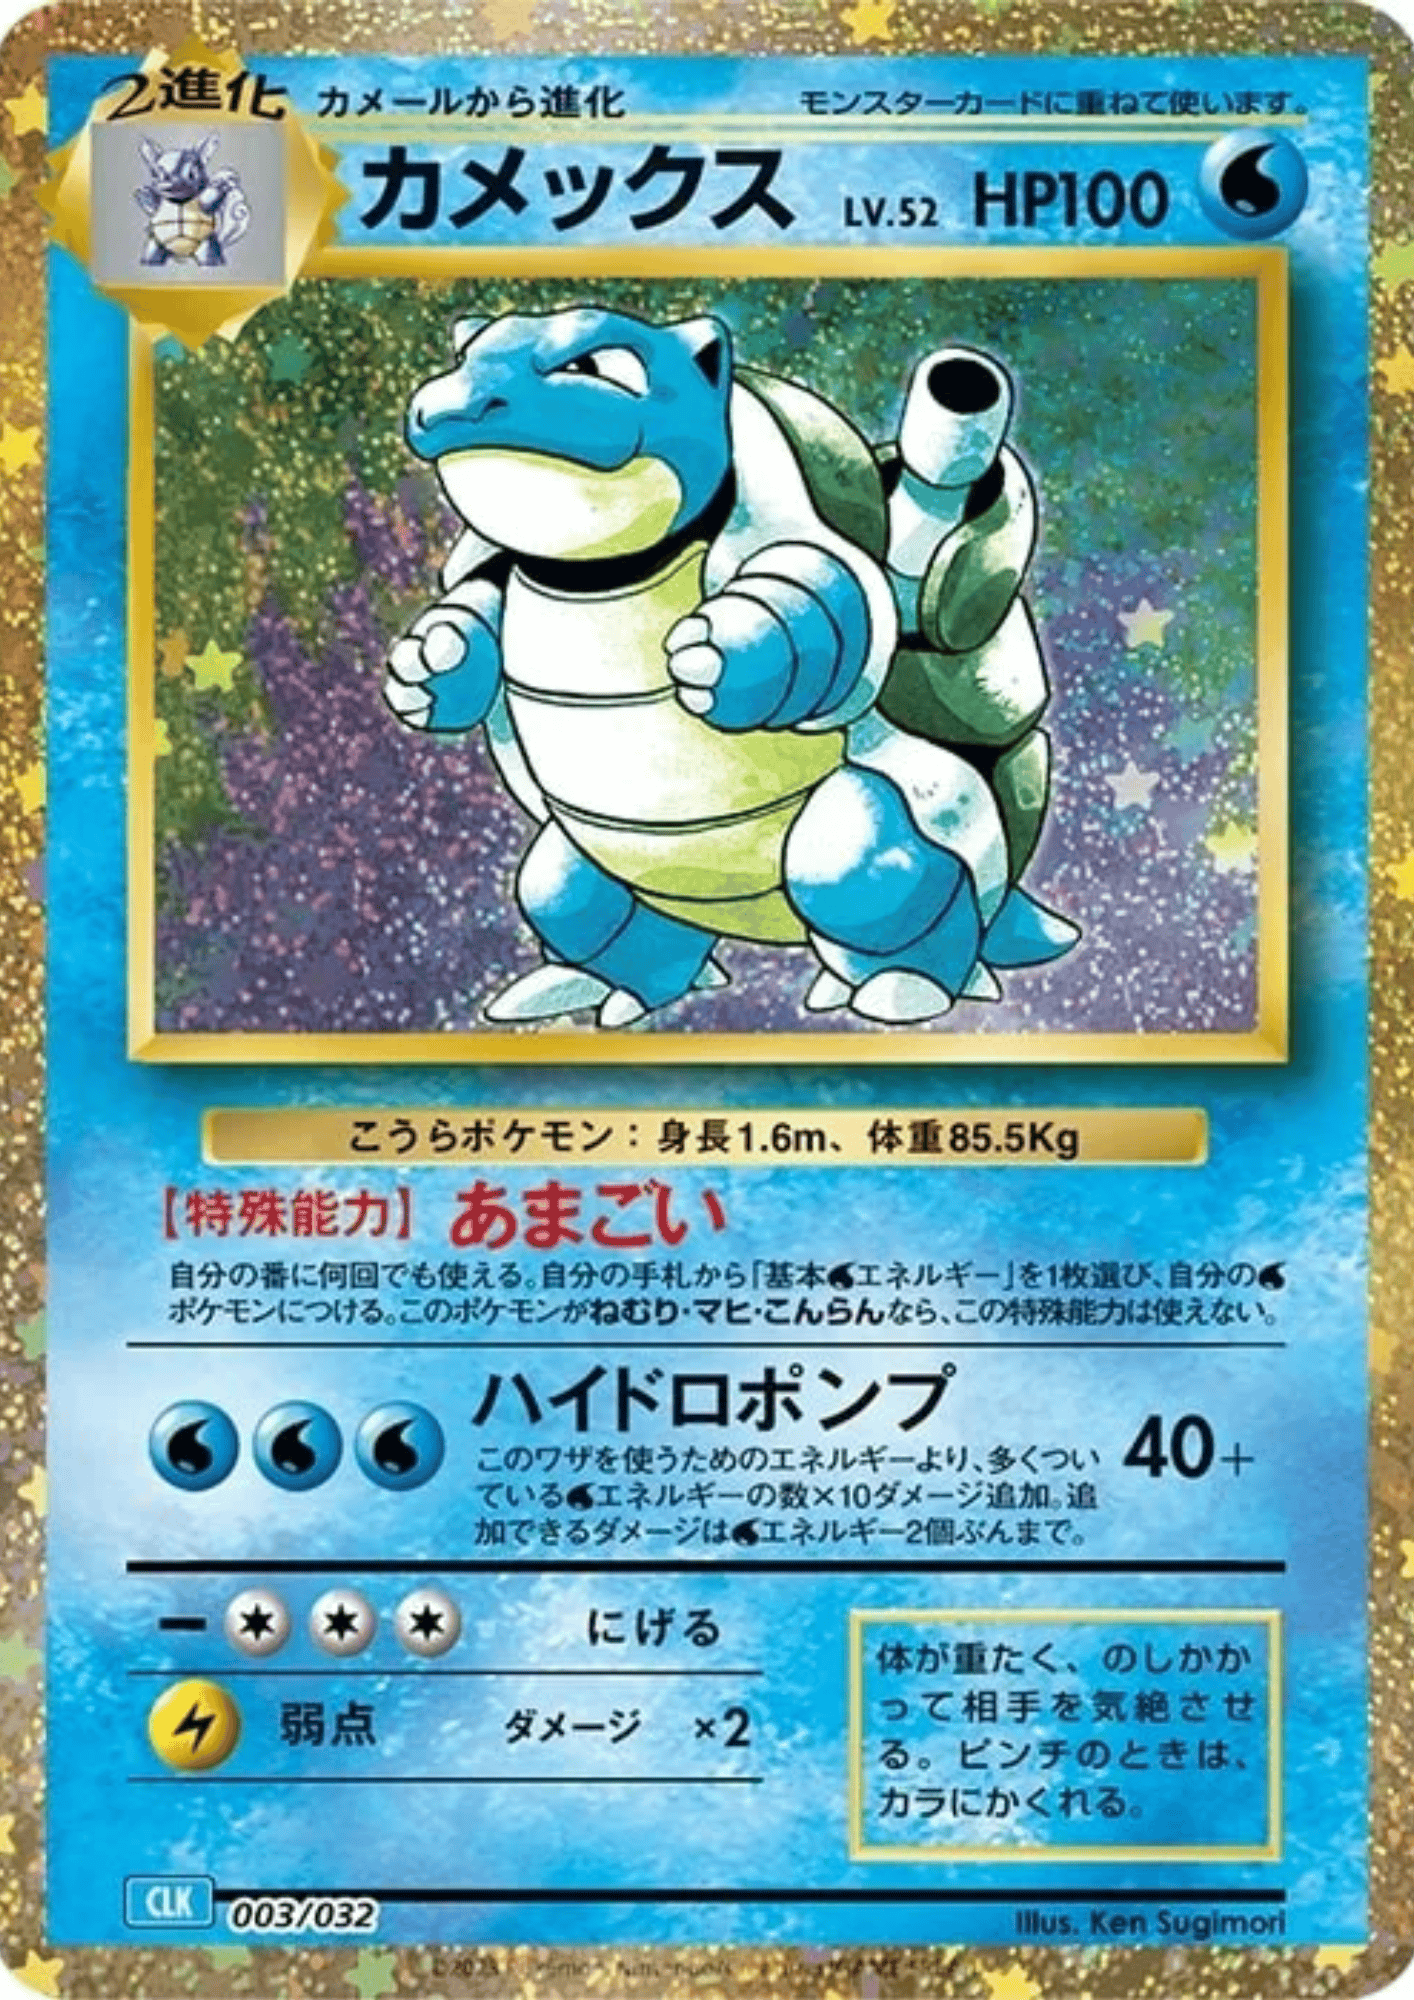 Blastoise 003/032 CLK | Pokémon-Sammelkartenspiel-Klassiker